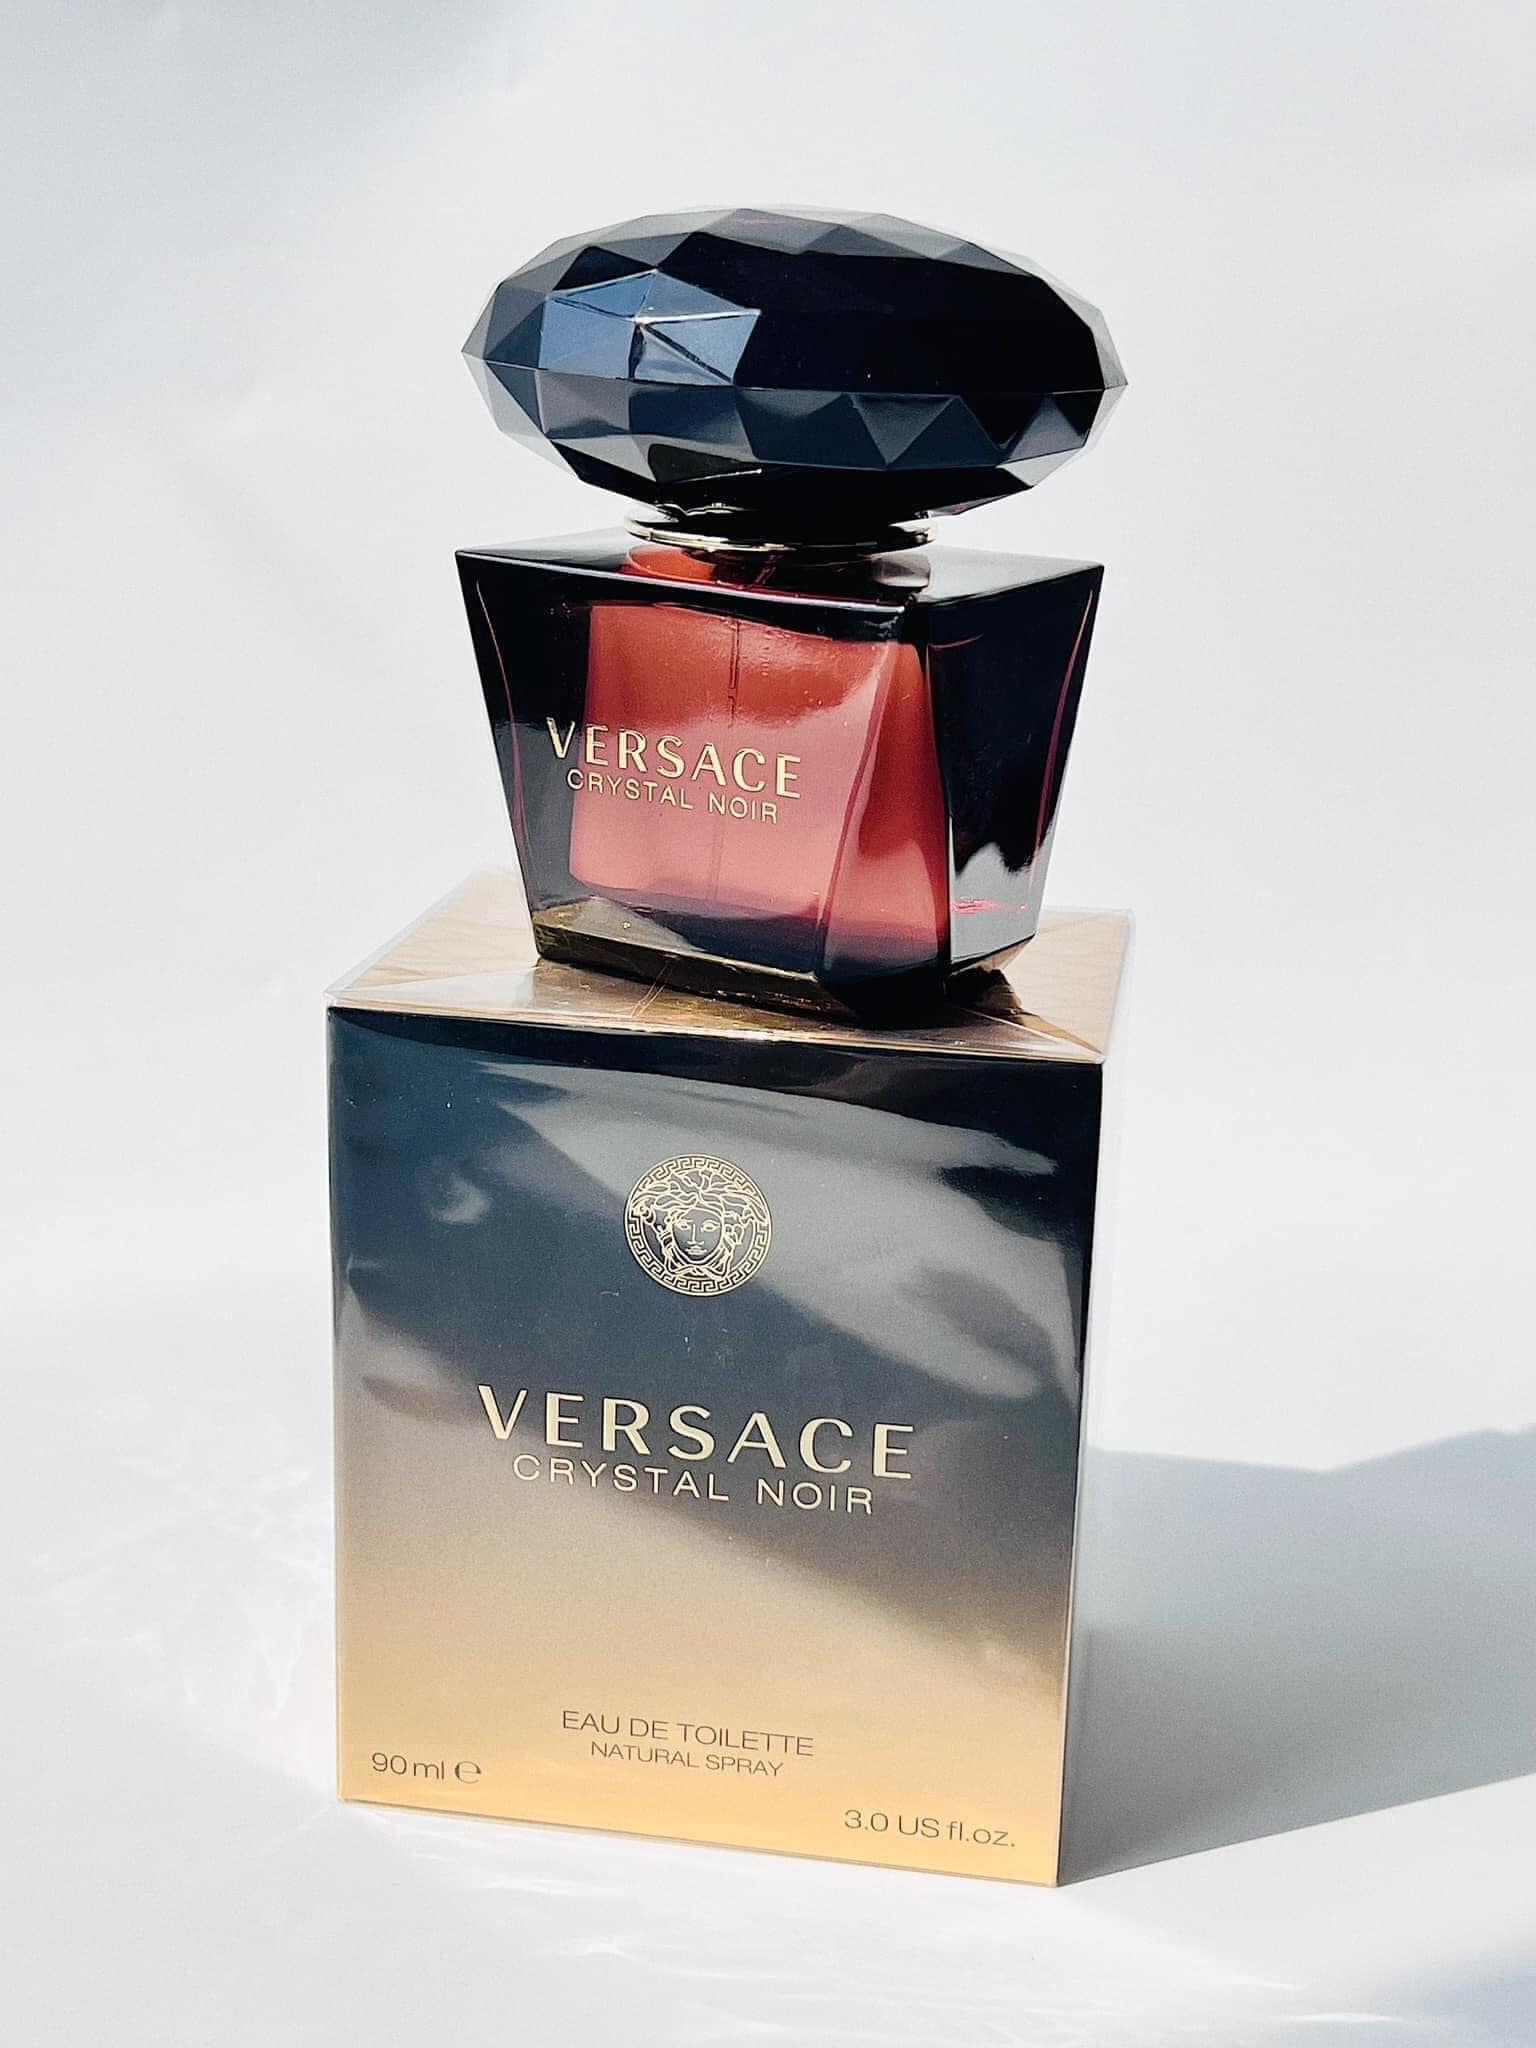 Versace Crystal Noir 2 - Nuochoarosa.com - Nước hoa cao cấp, chính hãng giá tốt, mẫu mới